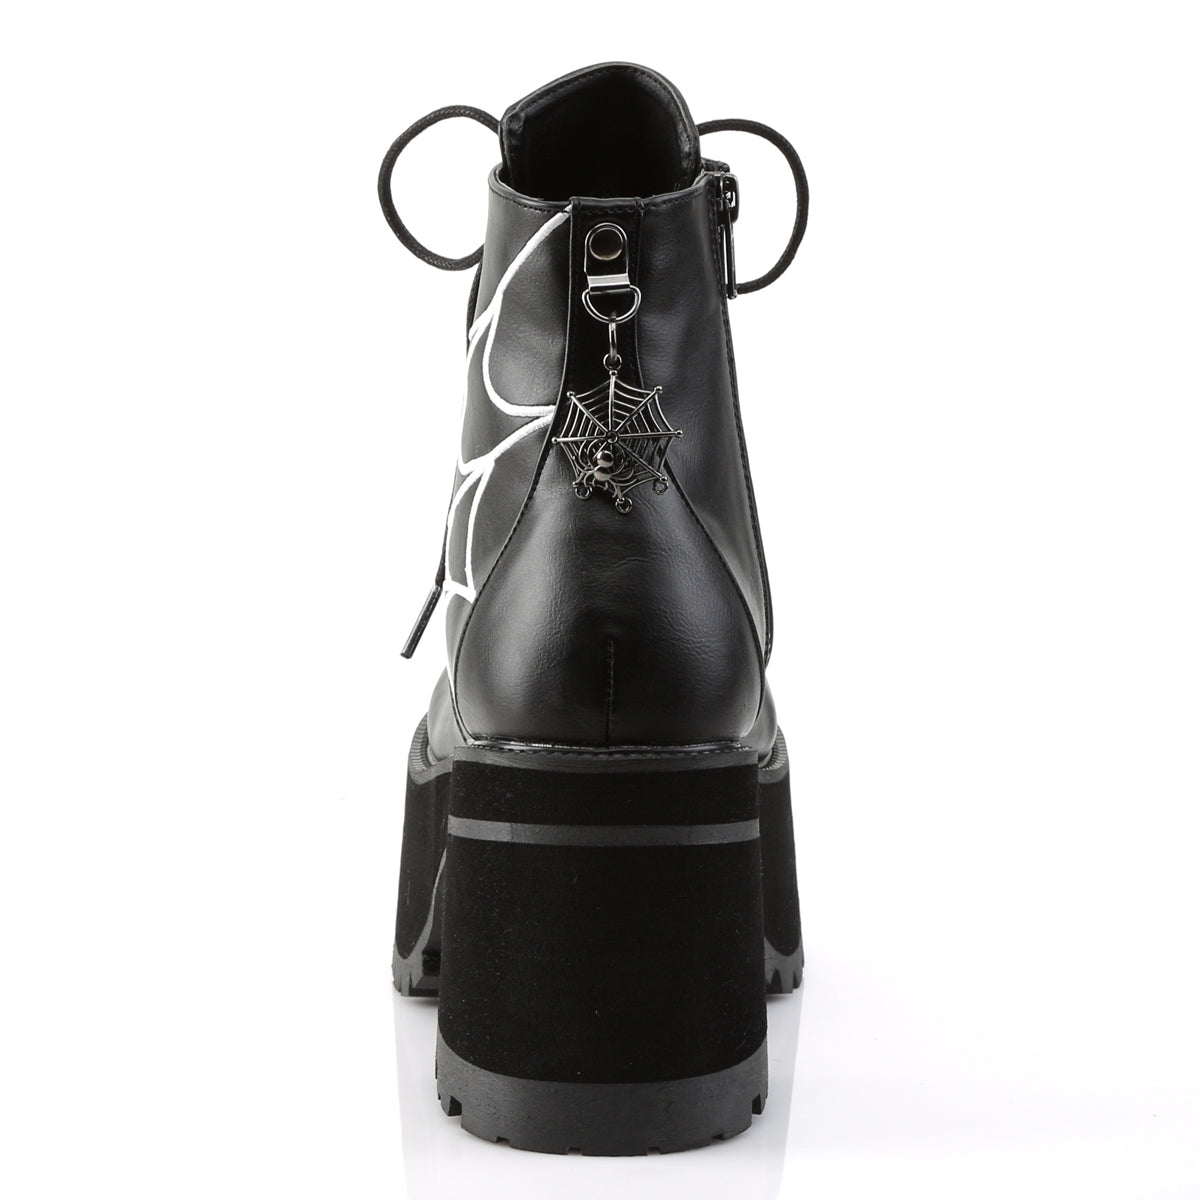 RANGER-105 Black Vegan Leather Ankle Boot Demonia